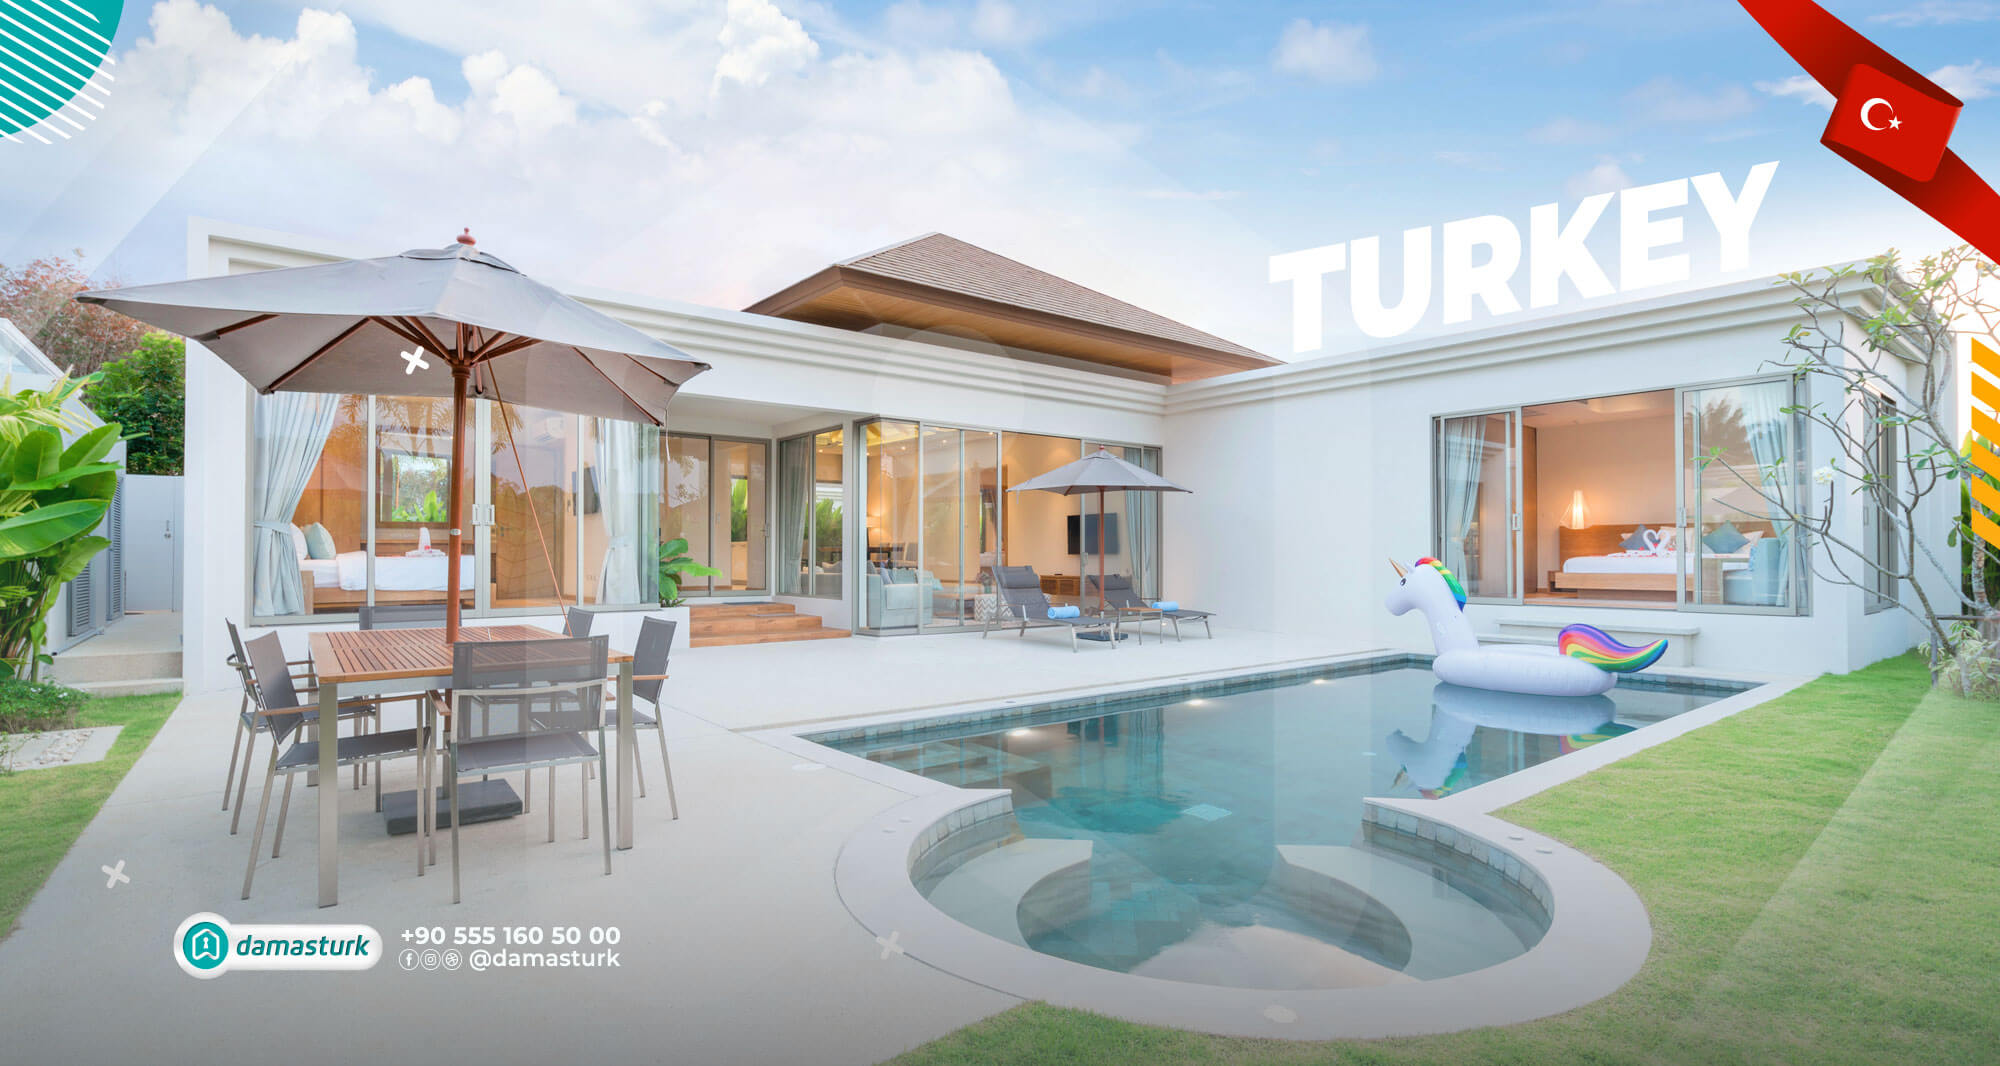 Luxury Villas for Sale in Turkey | Modern Villas by DAMAS TURK Realty